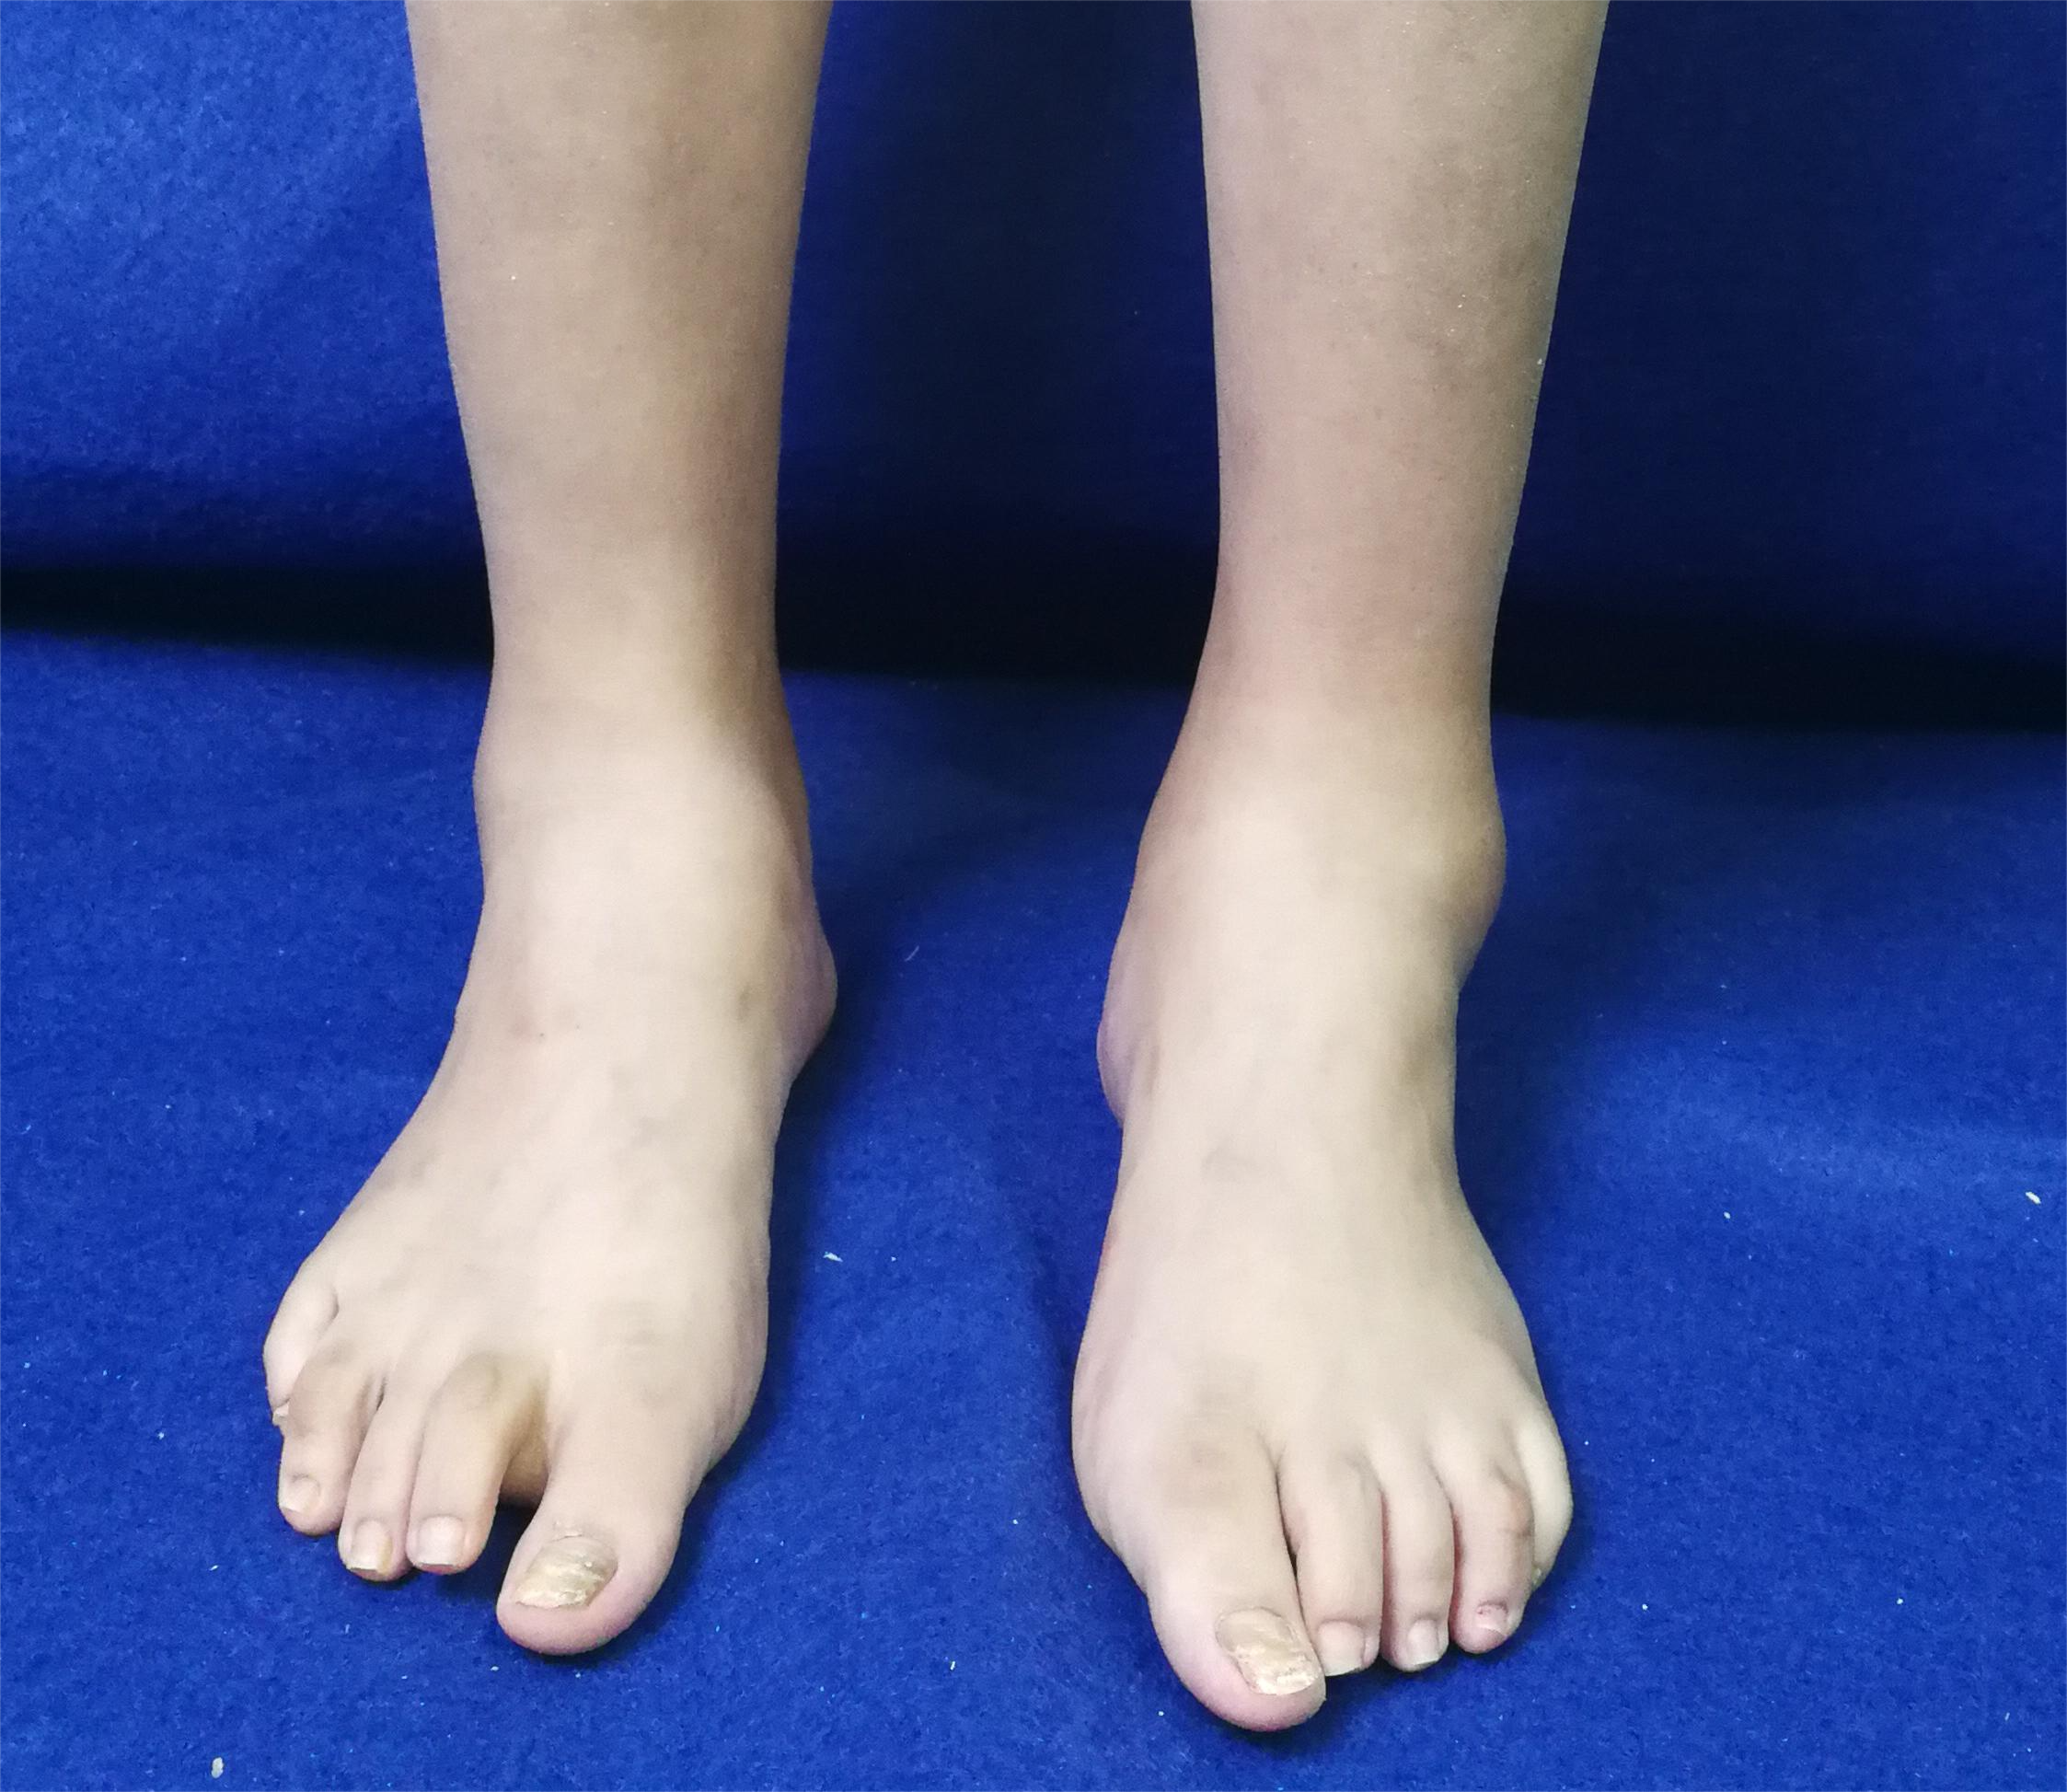 类风湿导致前足畸形踝关节类风湿性关节炎早期表现为踝关节肿胀,疼痛